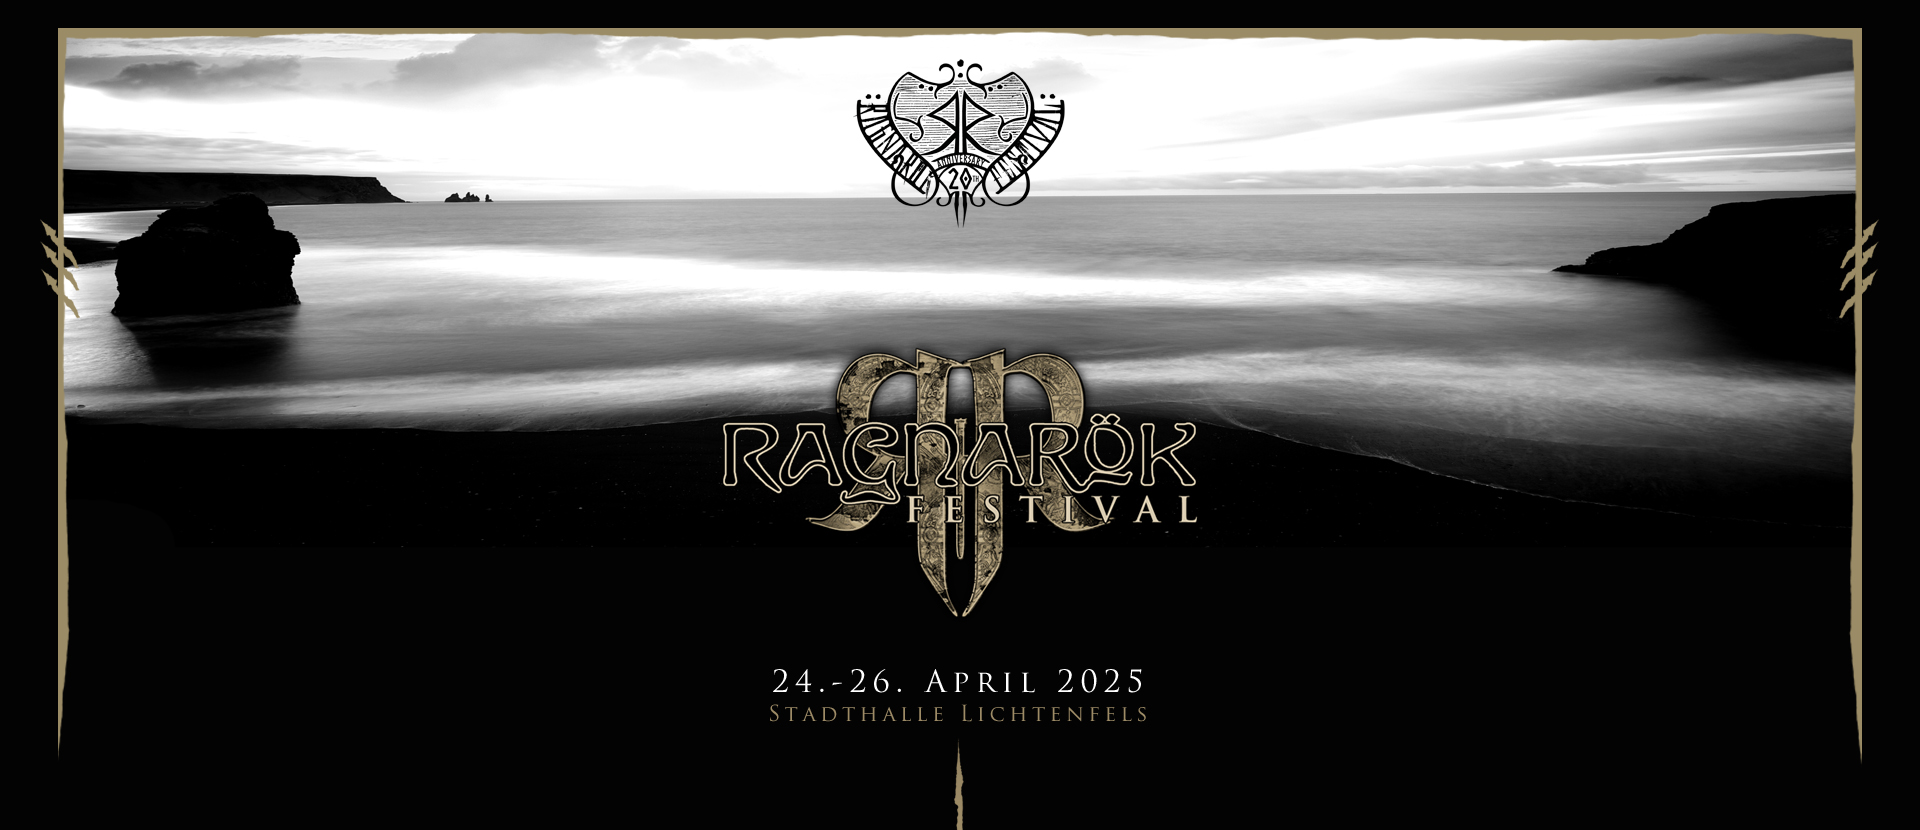 Ragnarök Festival 2025